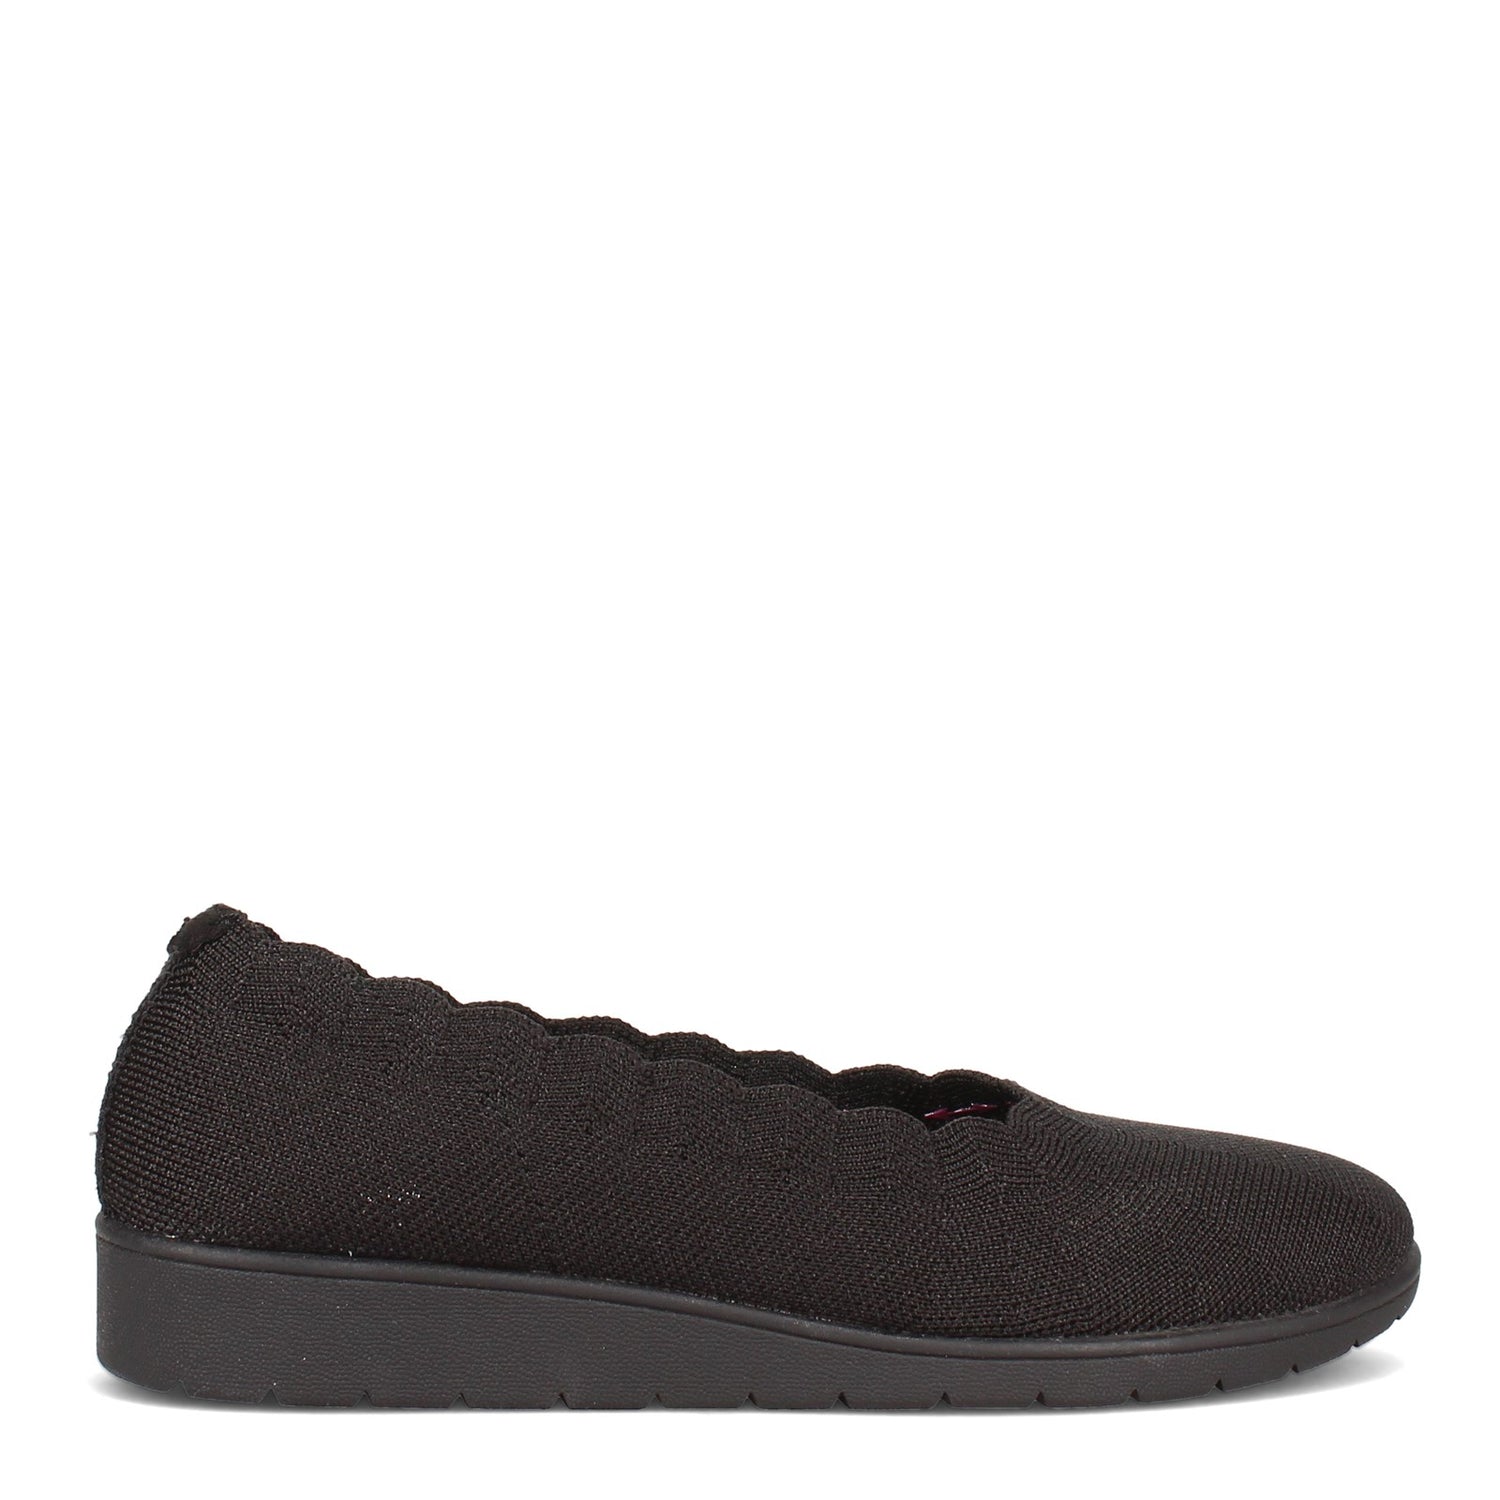 Peltz Shoes  Women's Skechers Cleo Flex Wedge - Spellbind Slip-On - Wide Width BLACK 158156W-BBK